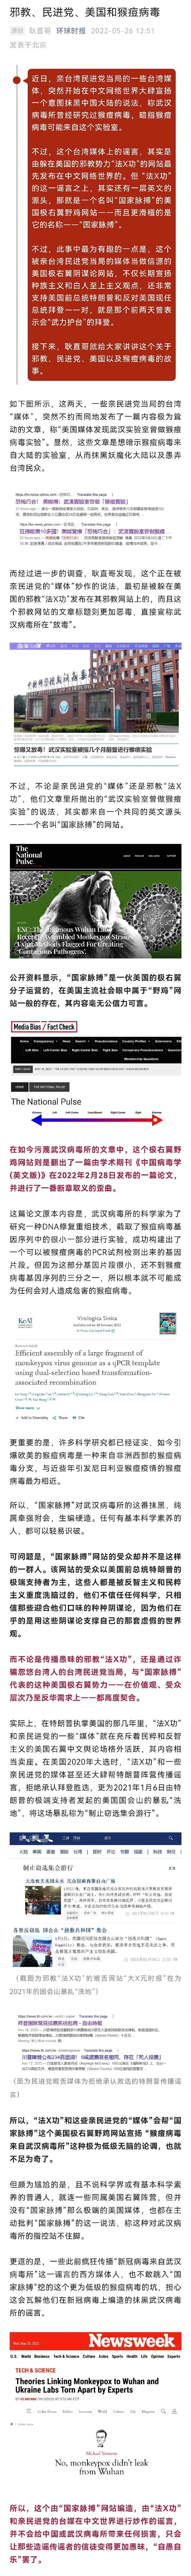 势力联合炒作猴痘谣言抹黑中国 台湾媒体大肆散布所曾经研究过猴痘病毒